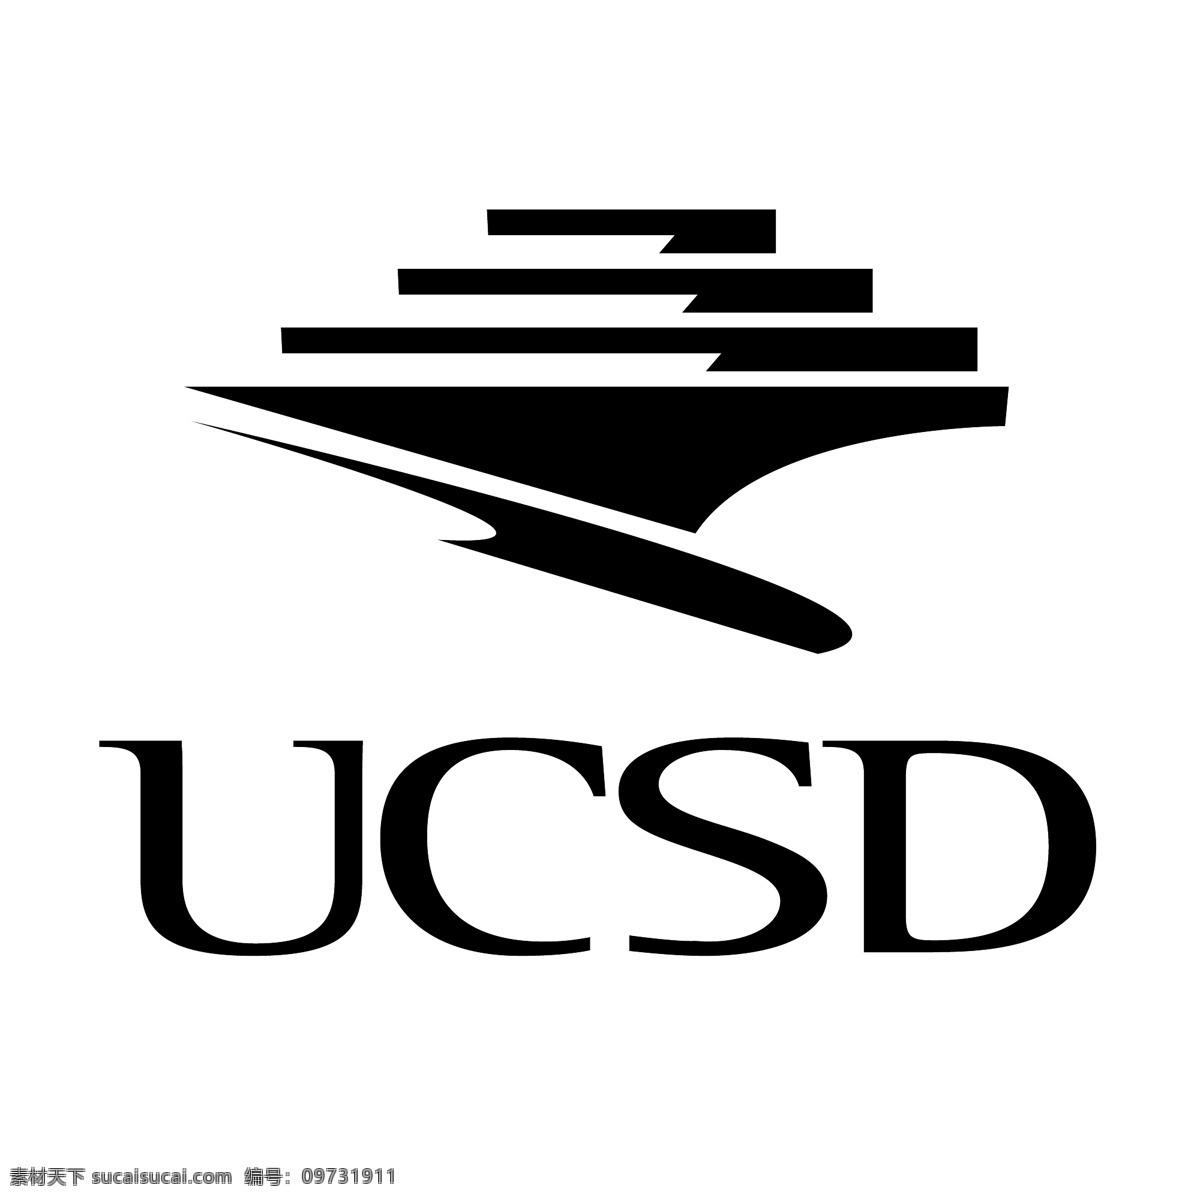 加州 大学 圣地亚哥 分校 标识 公司 免费 品牌 品牌标识 商标 矢量标志下载 免费矢量标识 矢量 psd源文件 logo设计